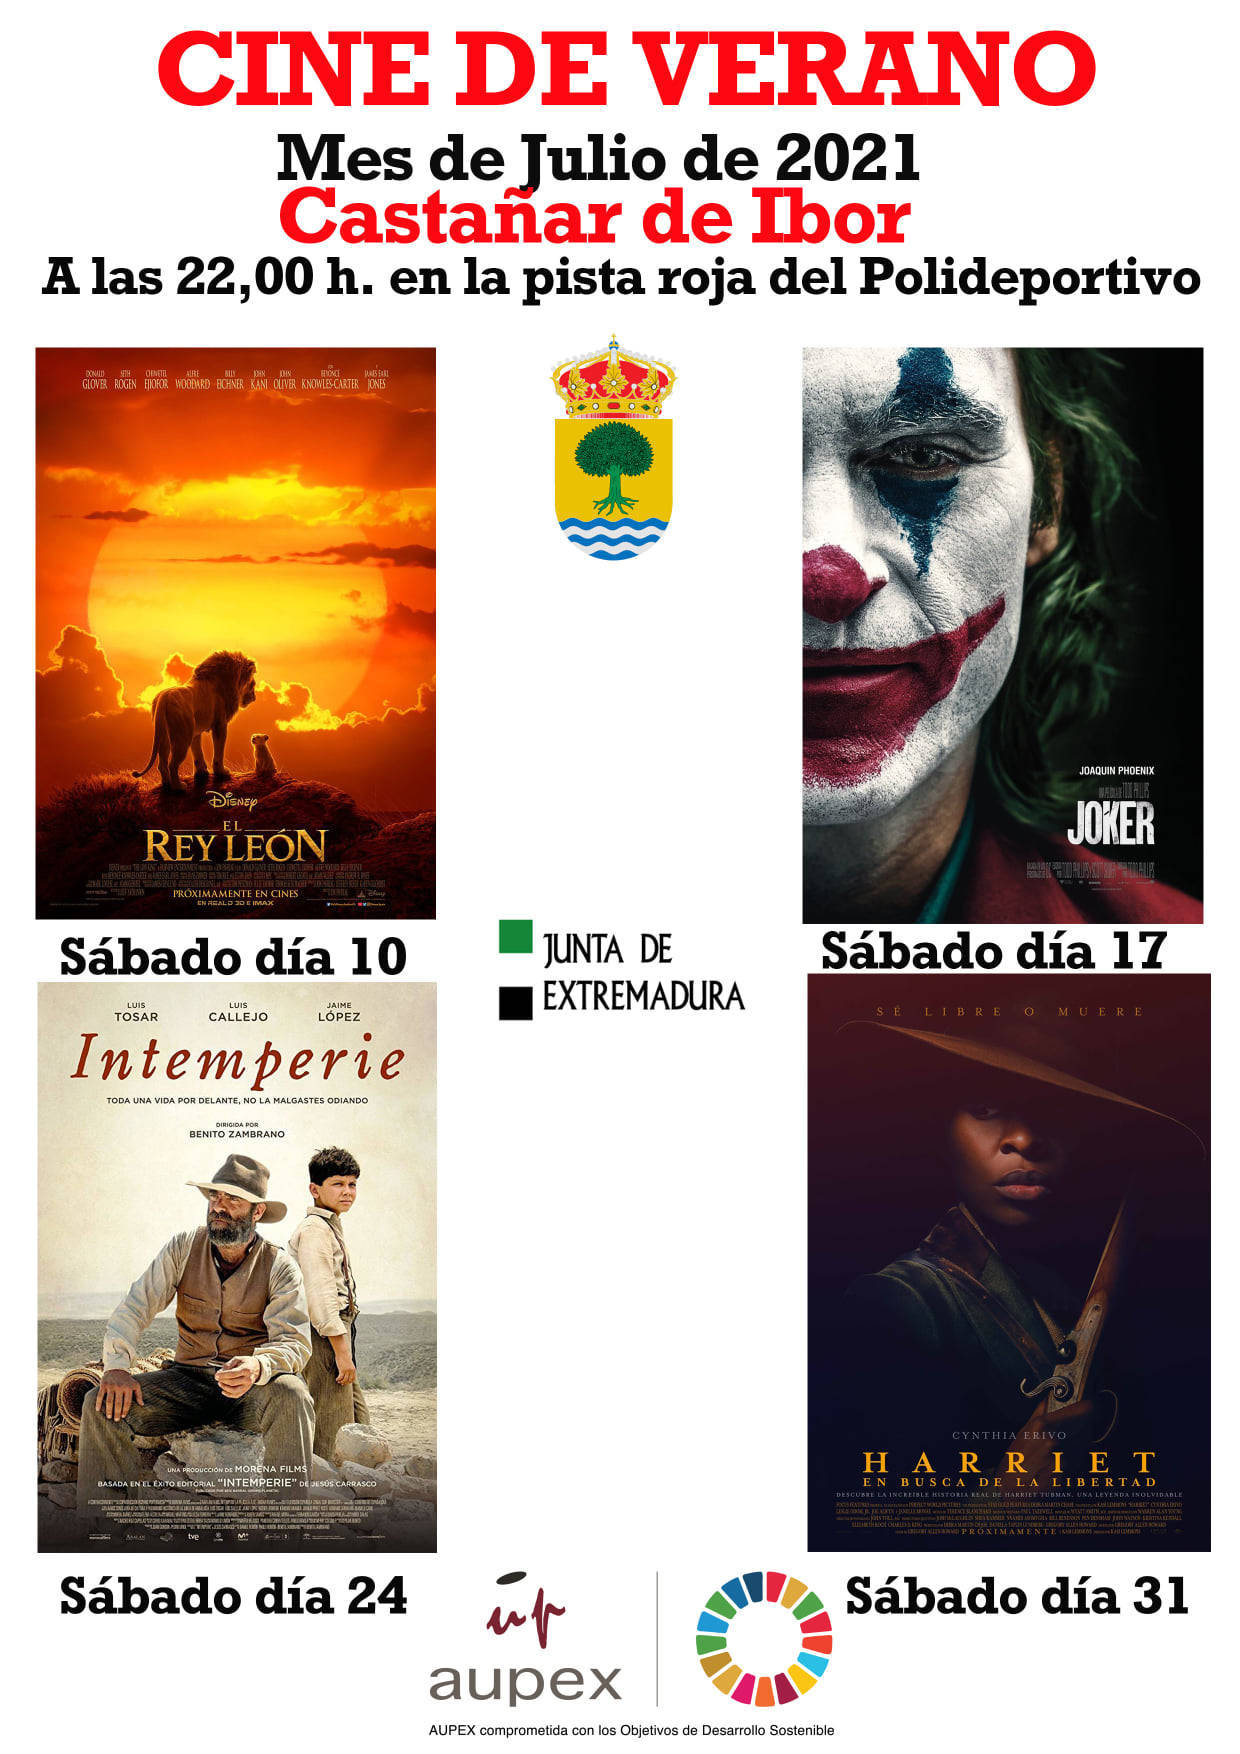 Cine de verano (2021) - Castañar de Ibor (Cáceres)